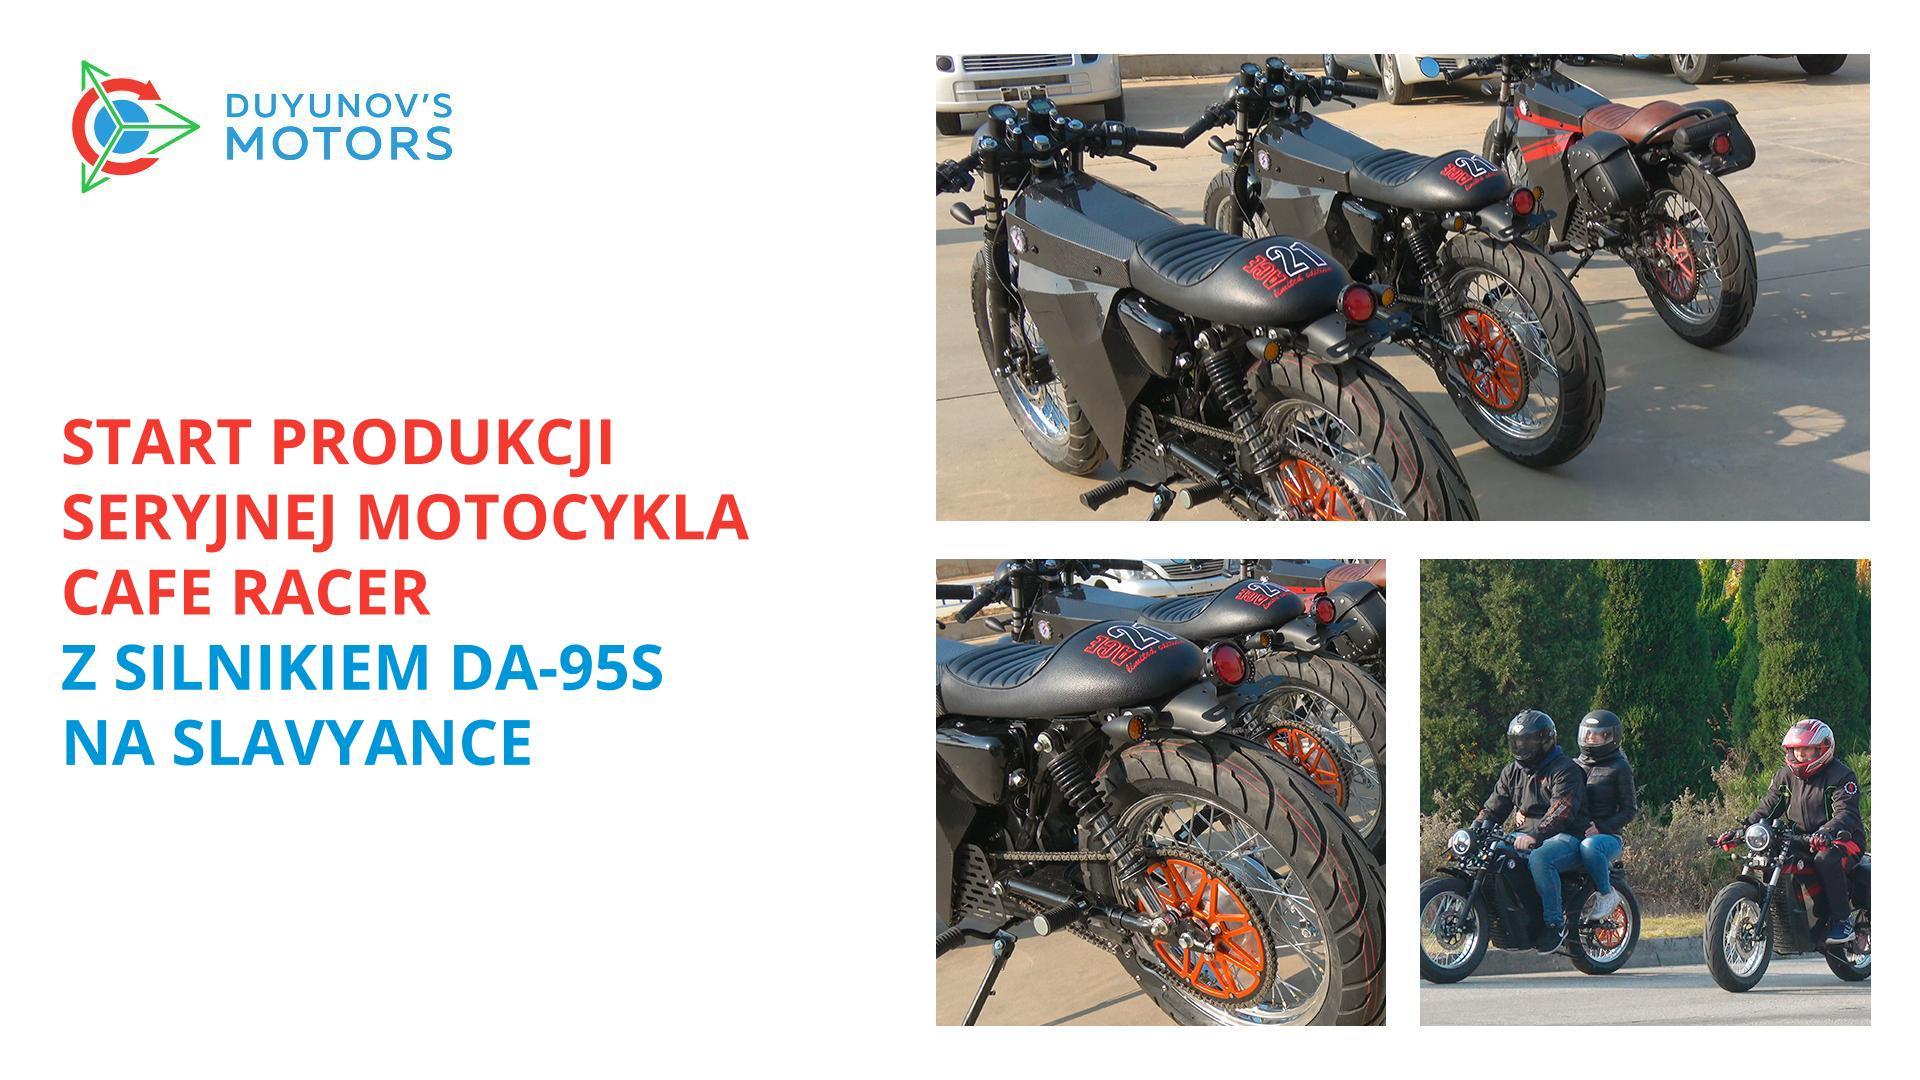 Rozpoczęcie seryjnej produkcji Motocykla Cafe racer z silnikiem DA-95S na Slavyance